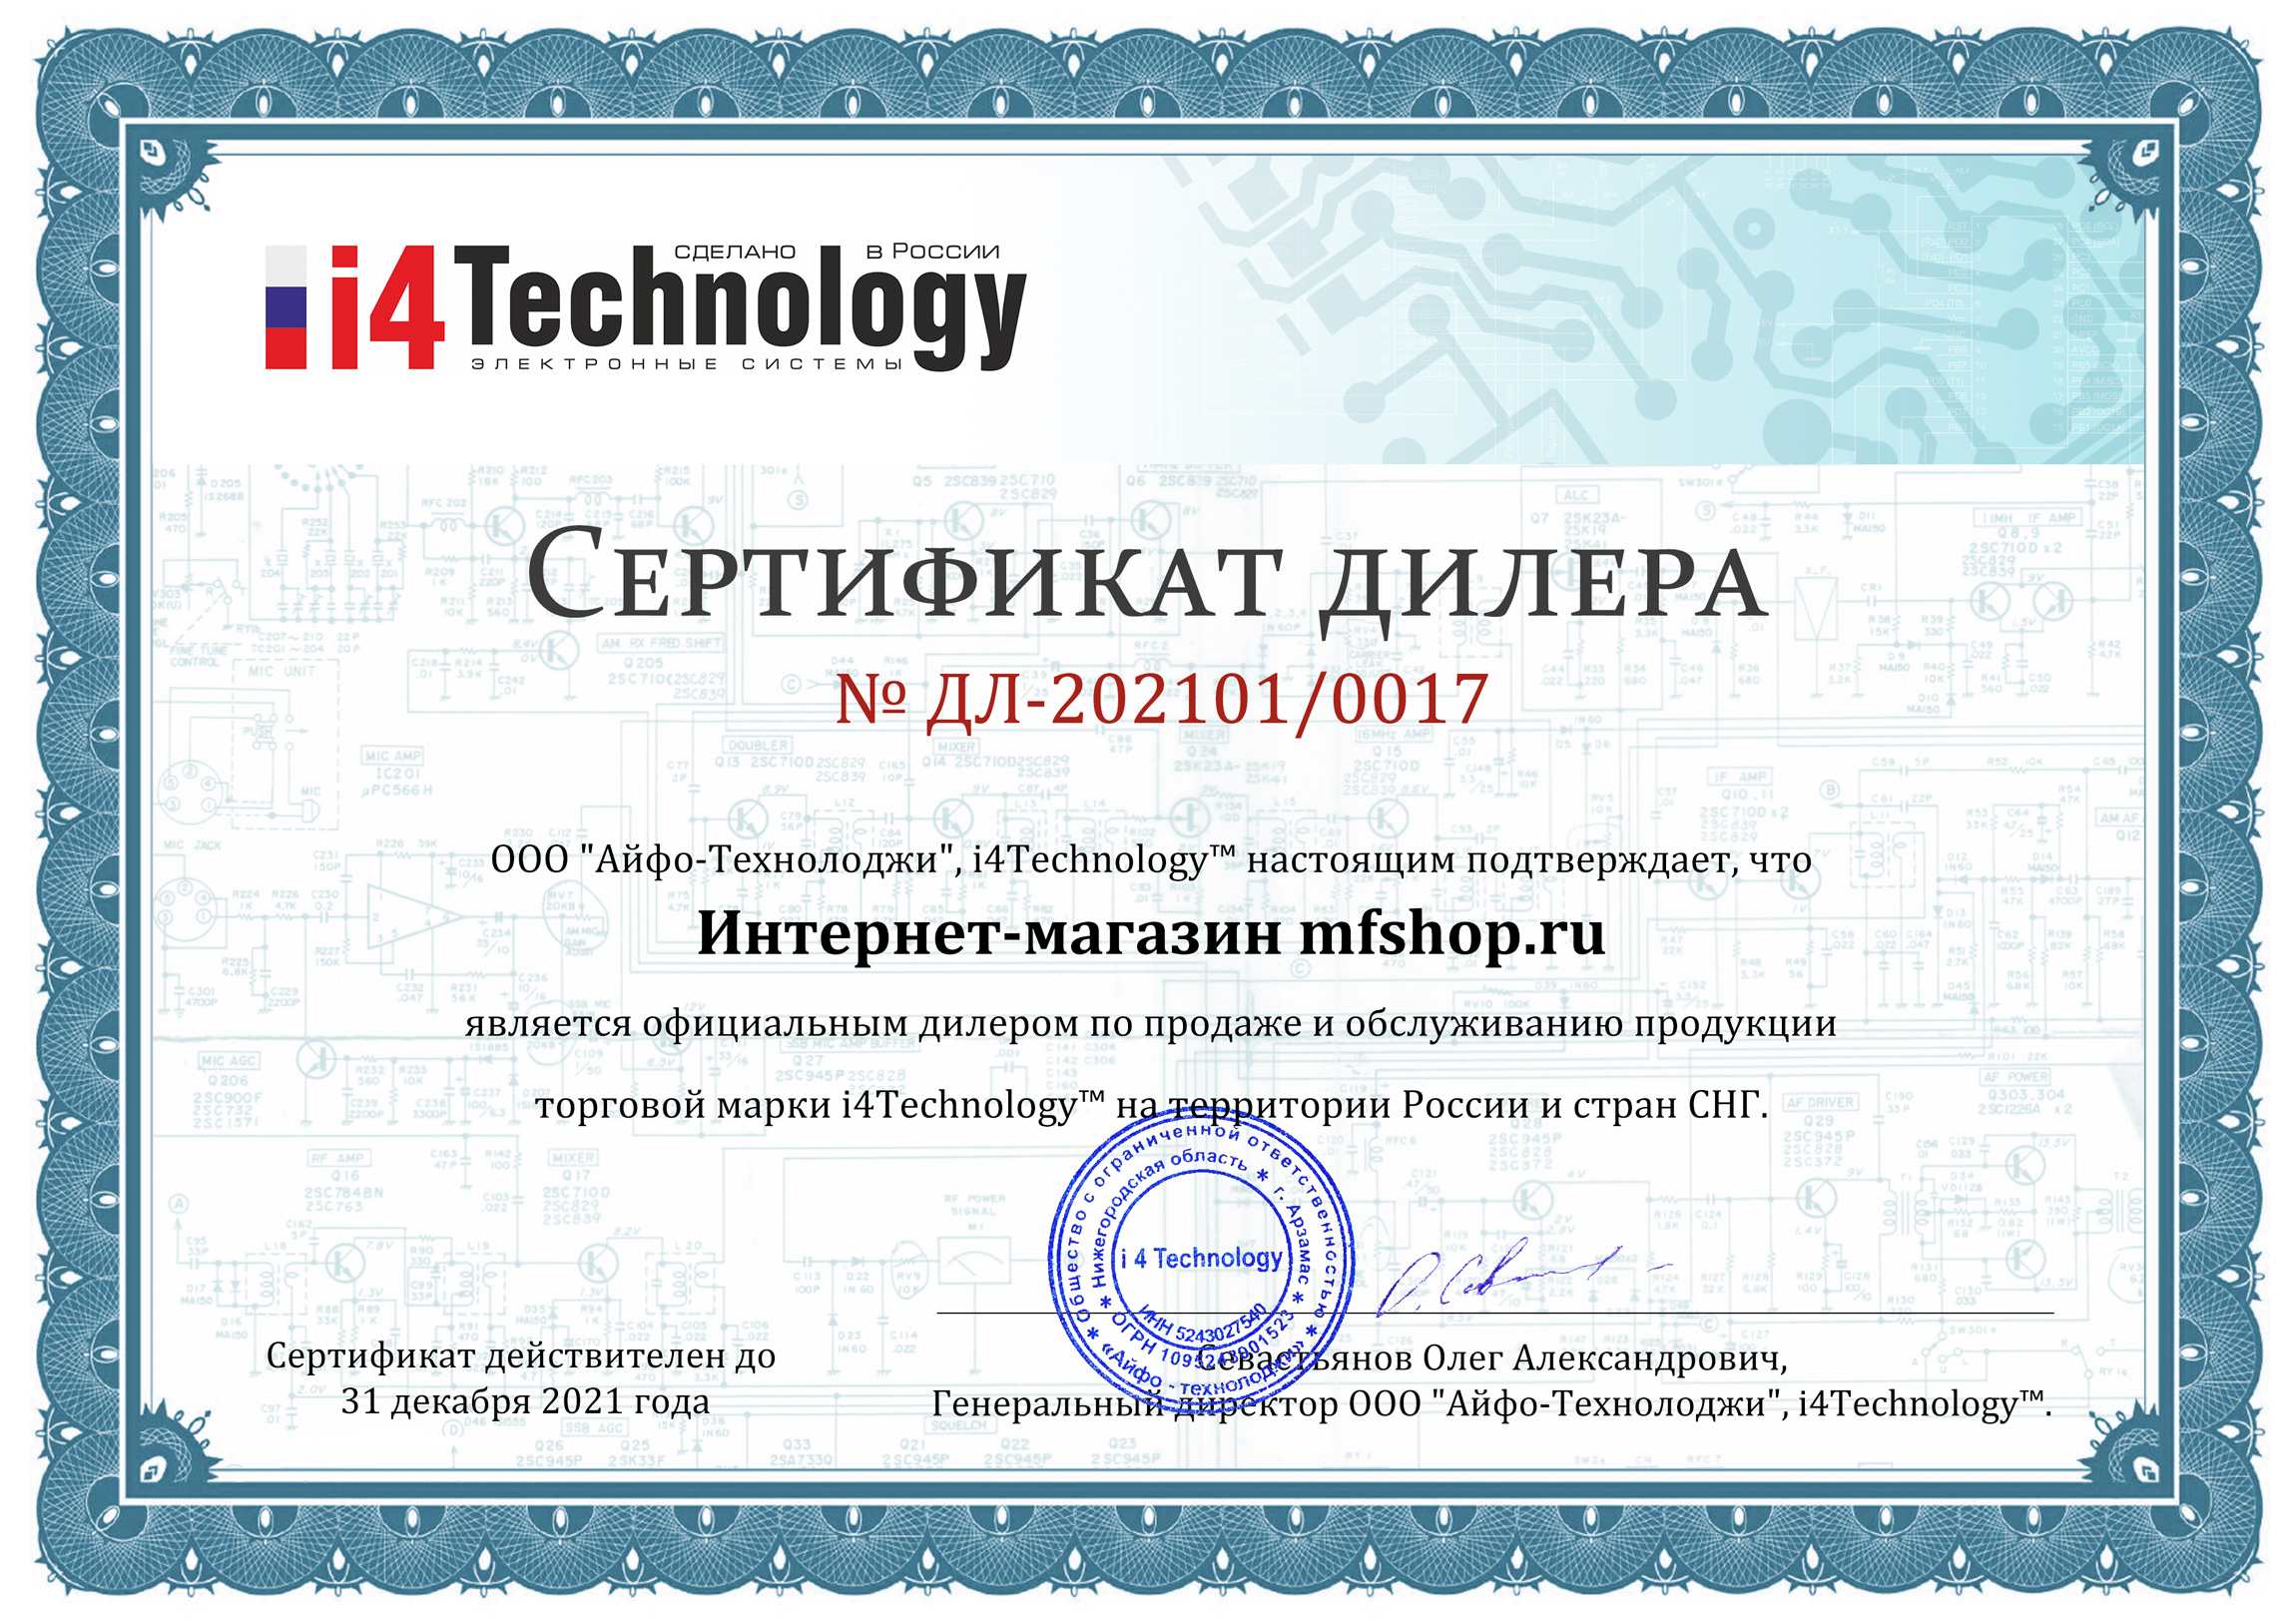 Наш магазин является эксклюзивным дистрибьютором товаров i4Technology и имеет соответствующий сертификат (нажмите для увеличения)